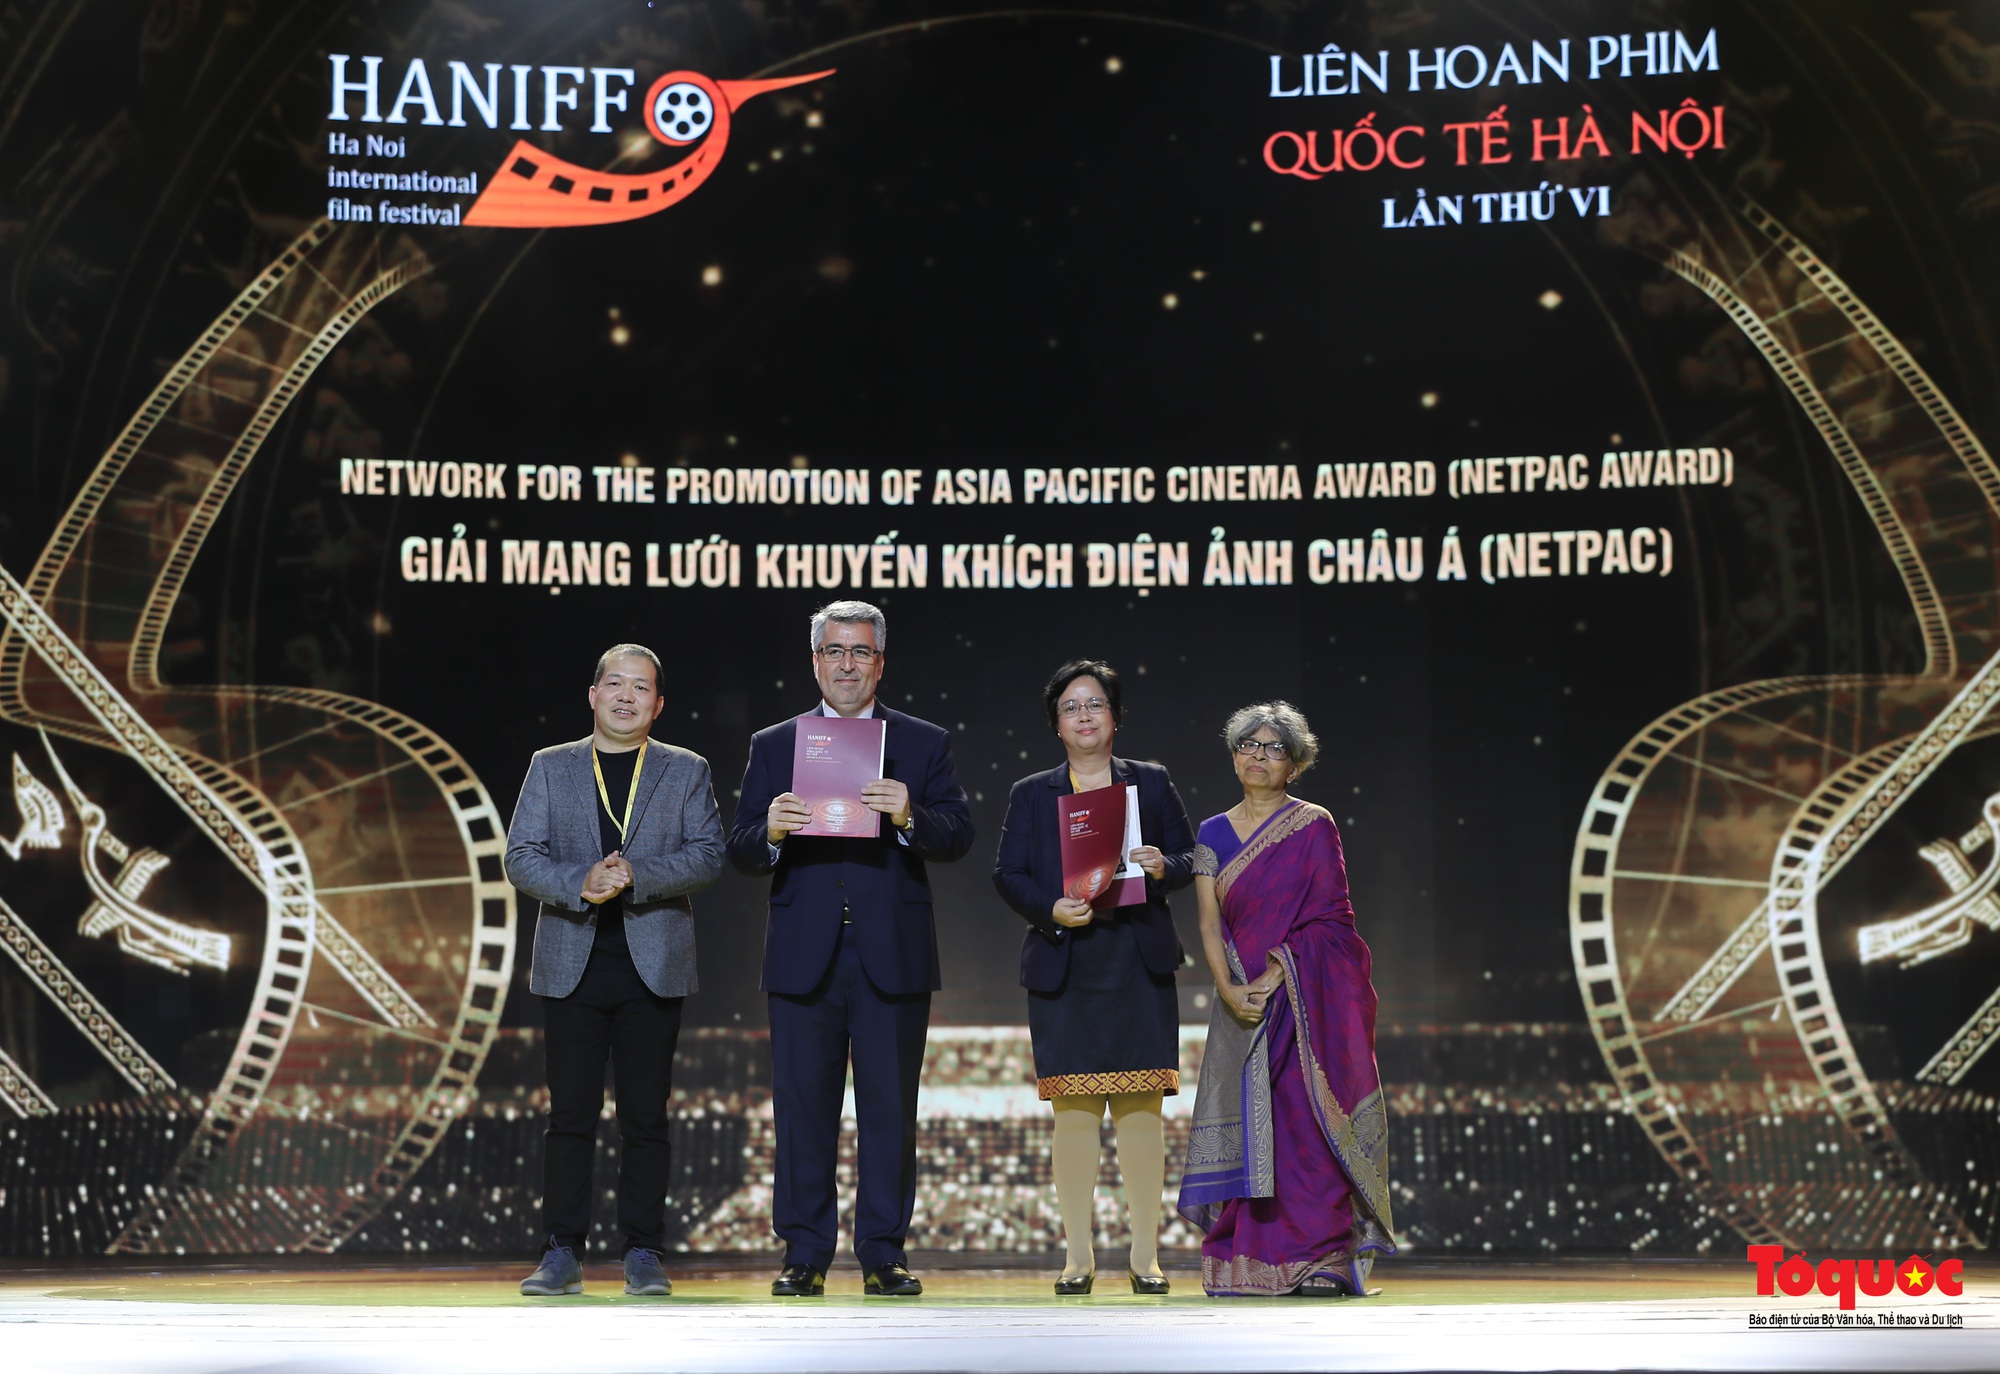 Bế mạc HANIFF 2022: 12 hàng mục giải thưởng trao cho các bộ phim, diễn viên, đạo diễn xuất sắc - Ảnh 16.